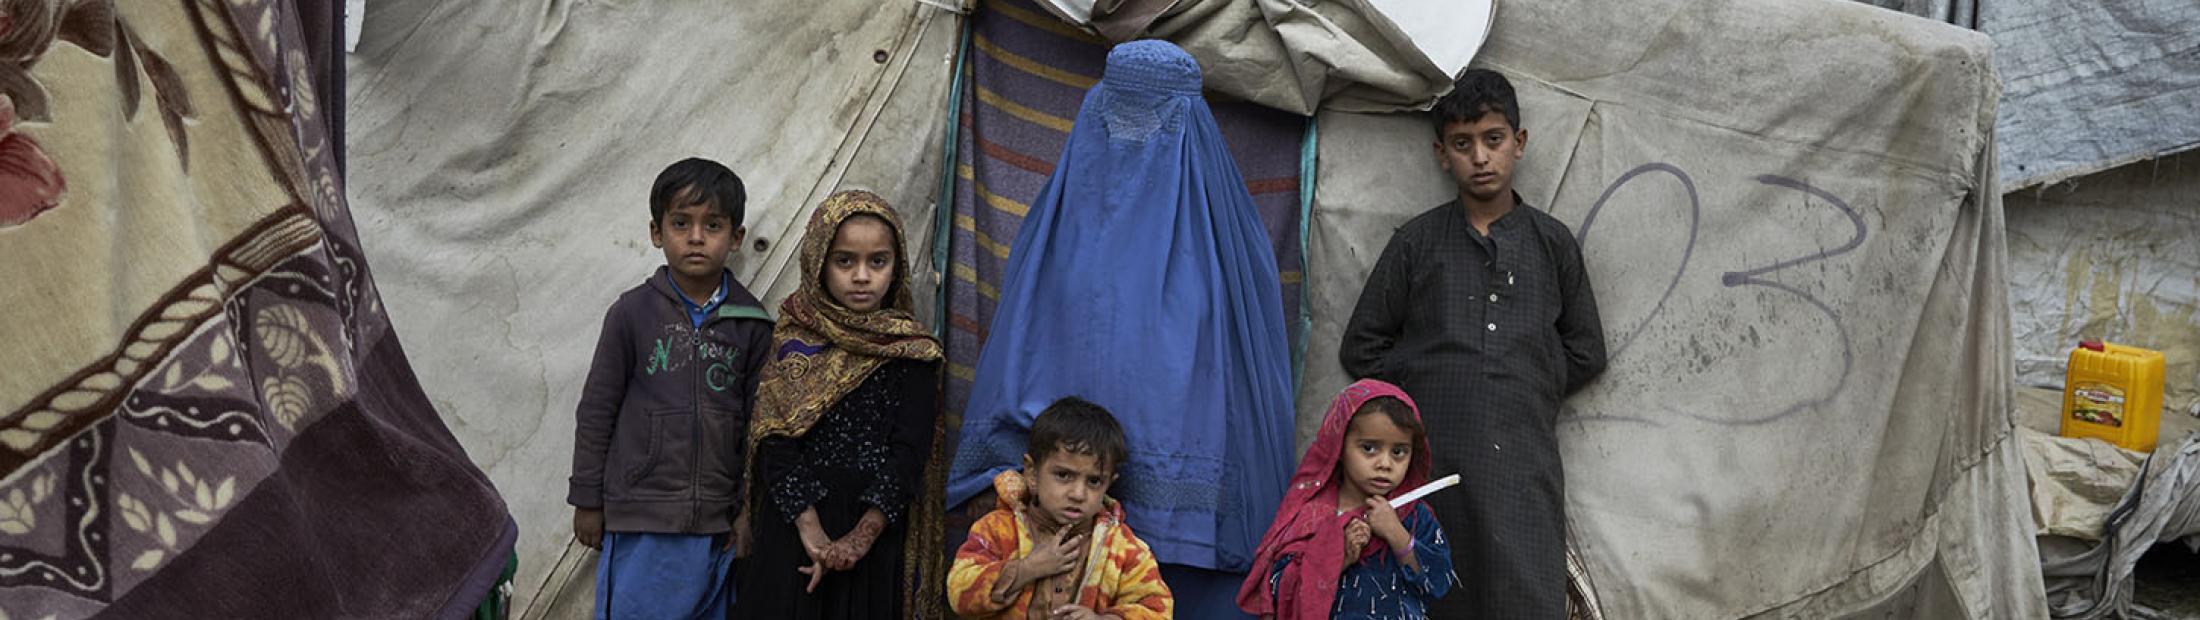 La vida en Afganistán un año después: miseria, hambre e incertidumbre